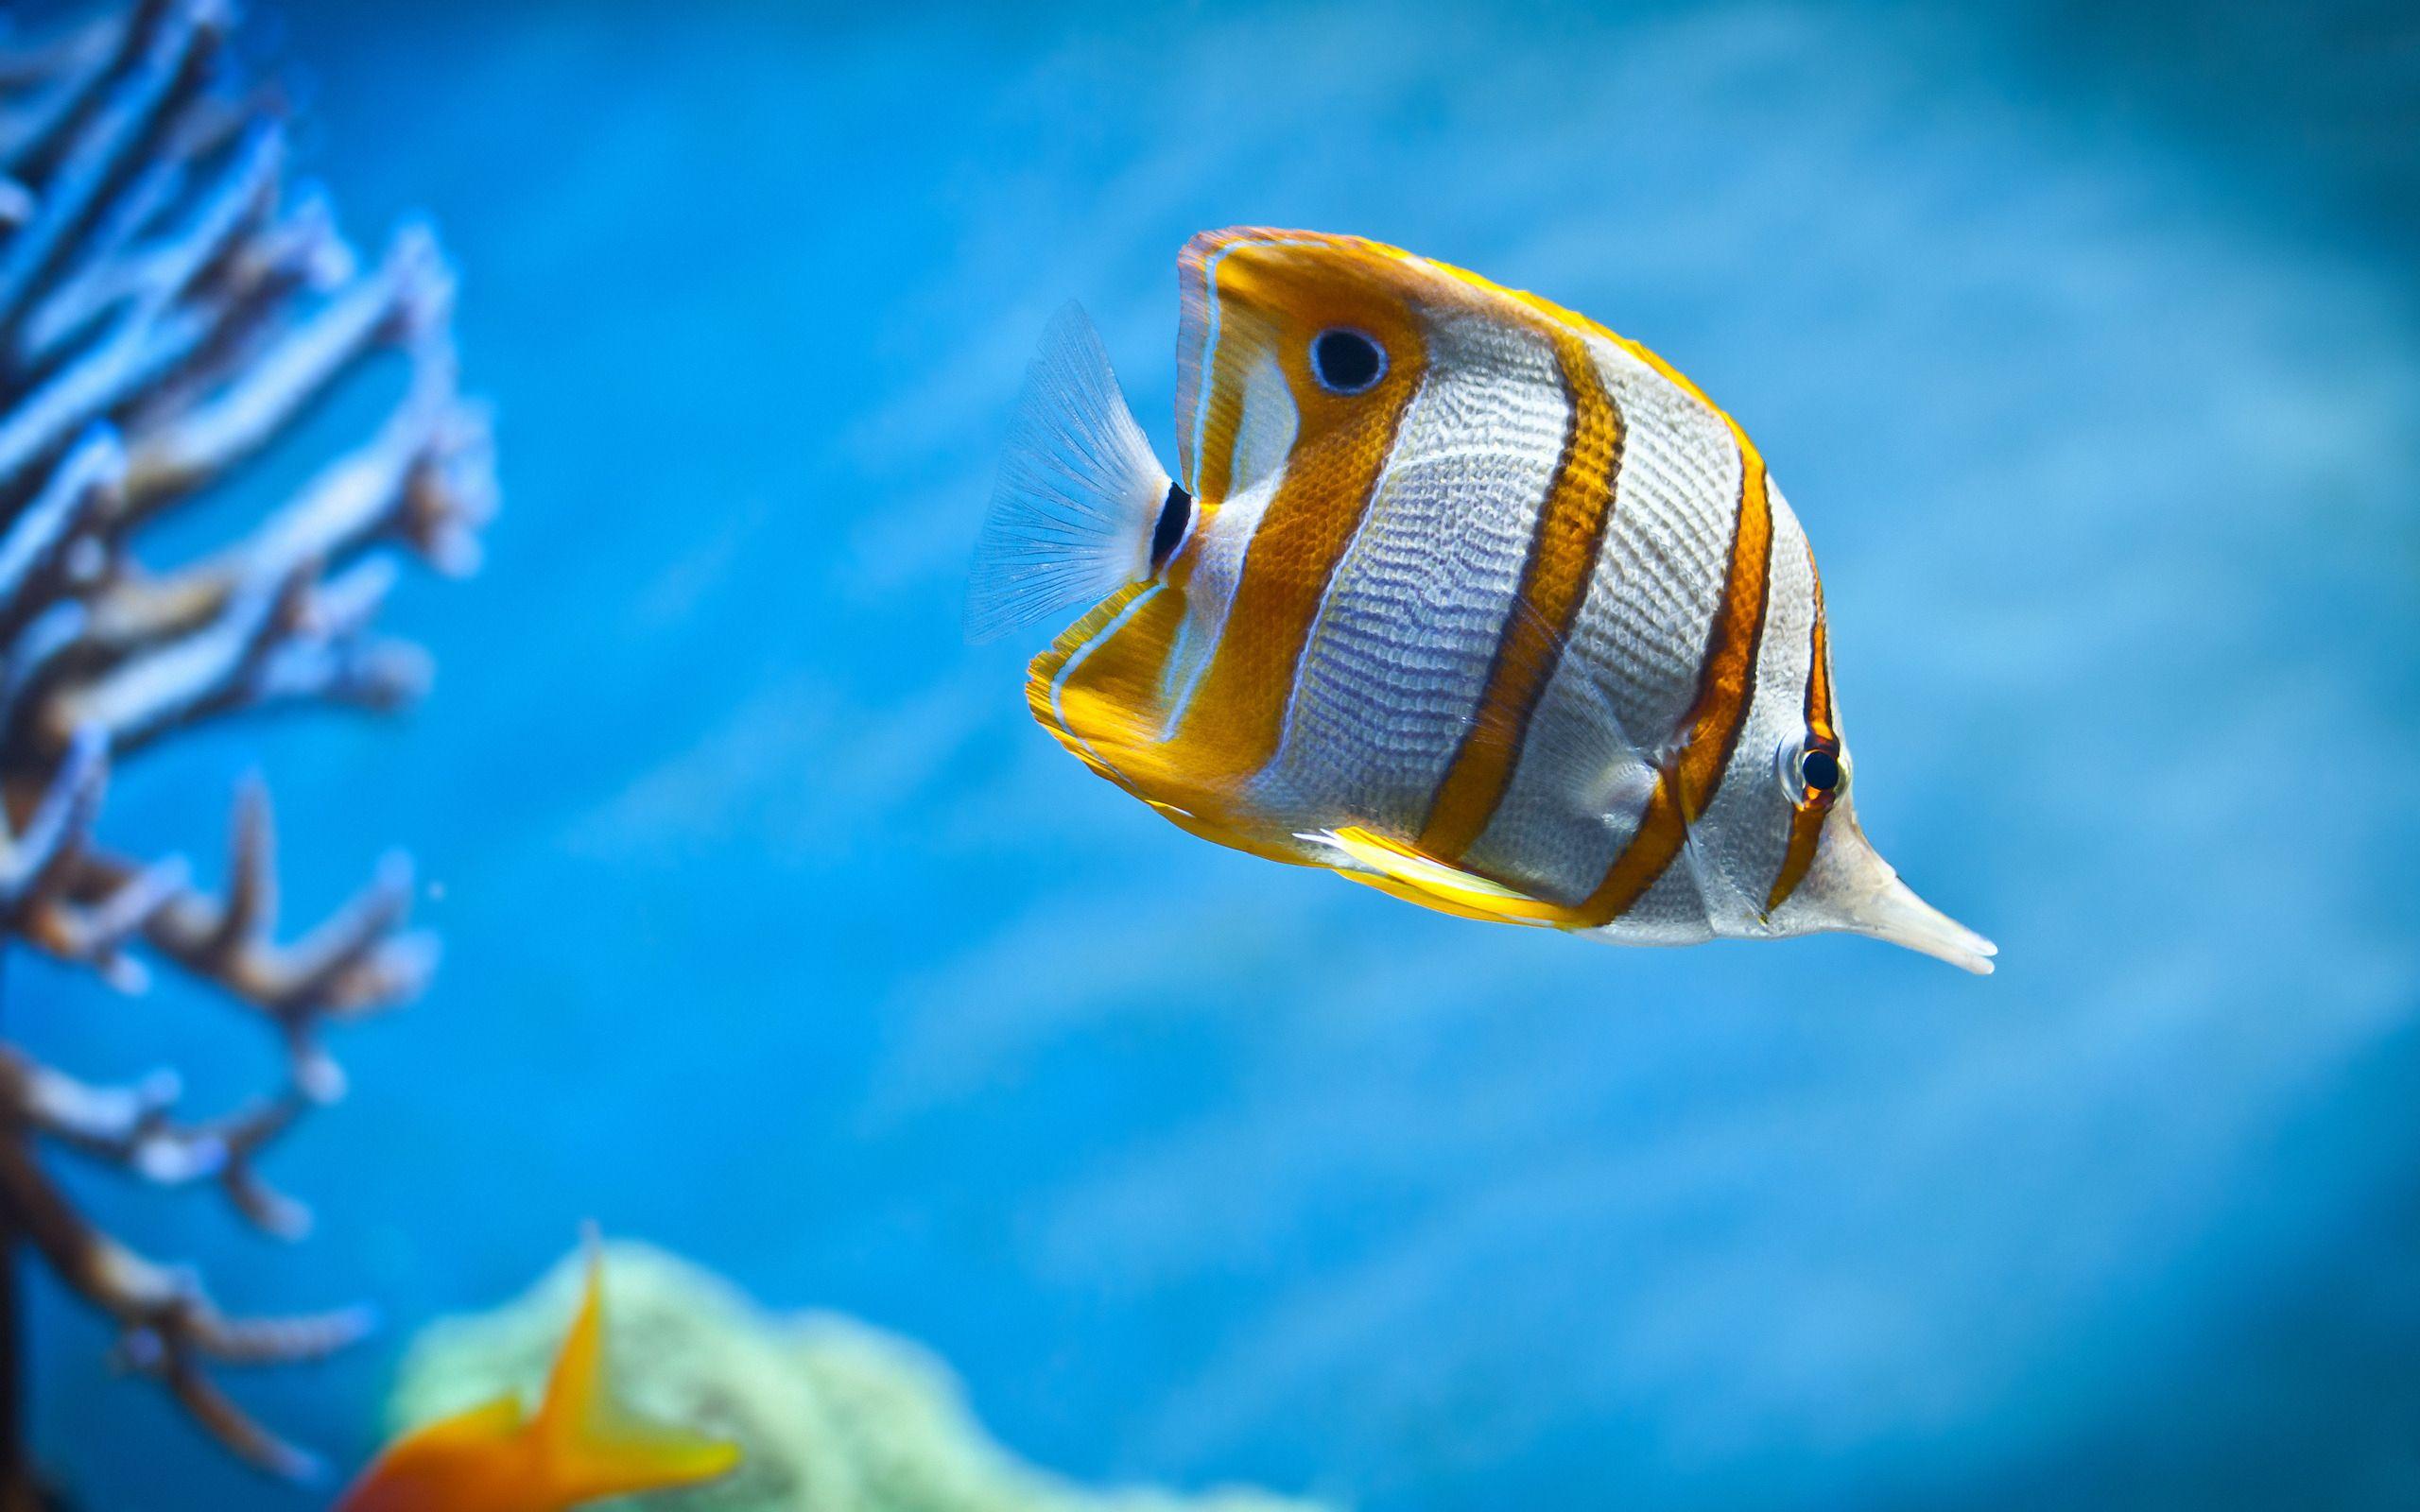 aquarium fish. Aquarium Fish Wallpaper Picture Photo Image. I